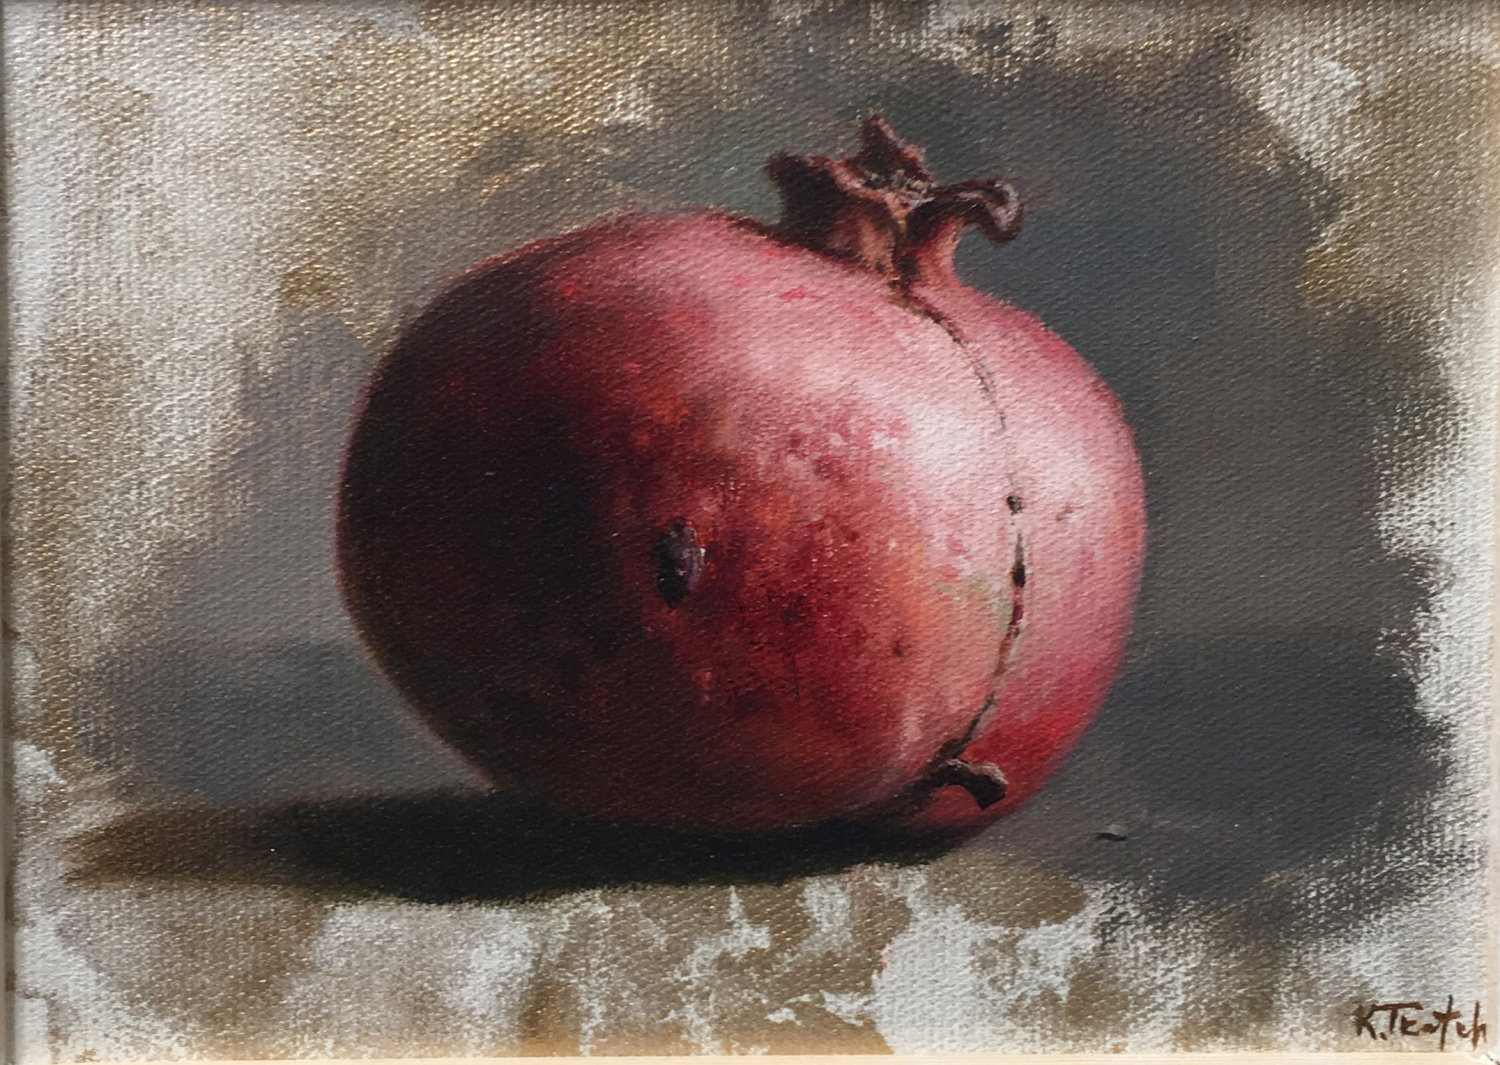 “Pomegranate” by Kim Tkatch